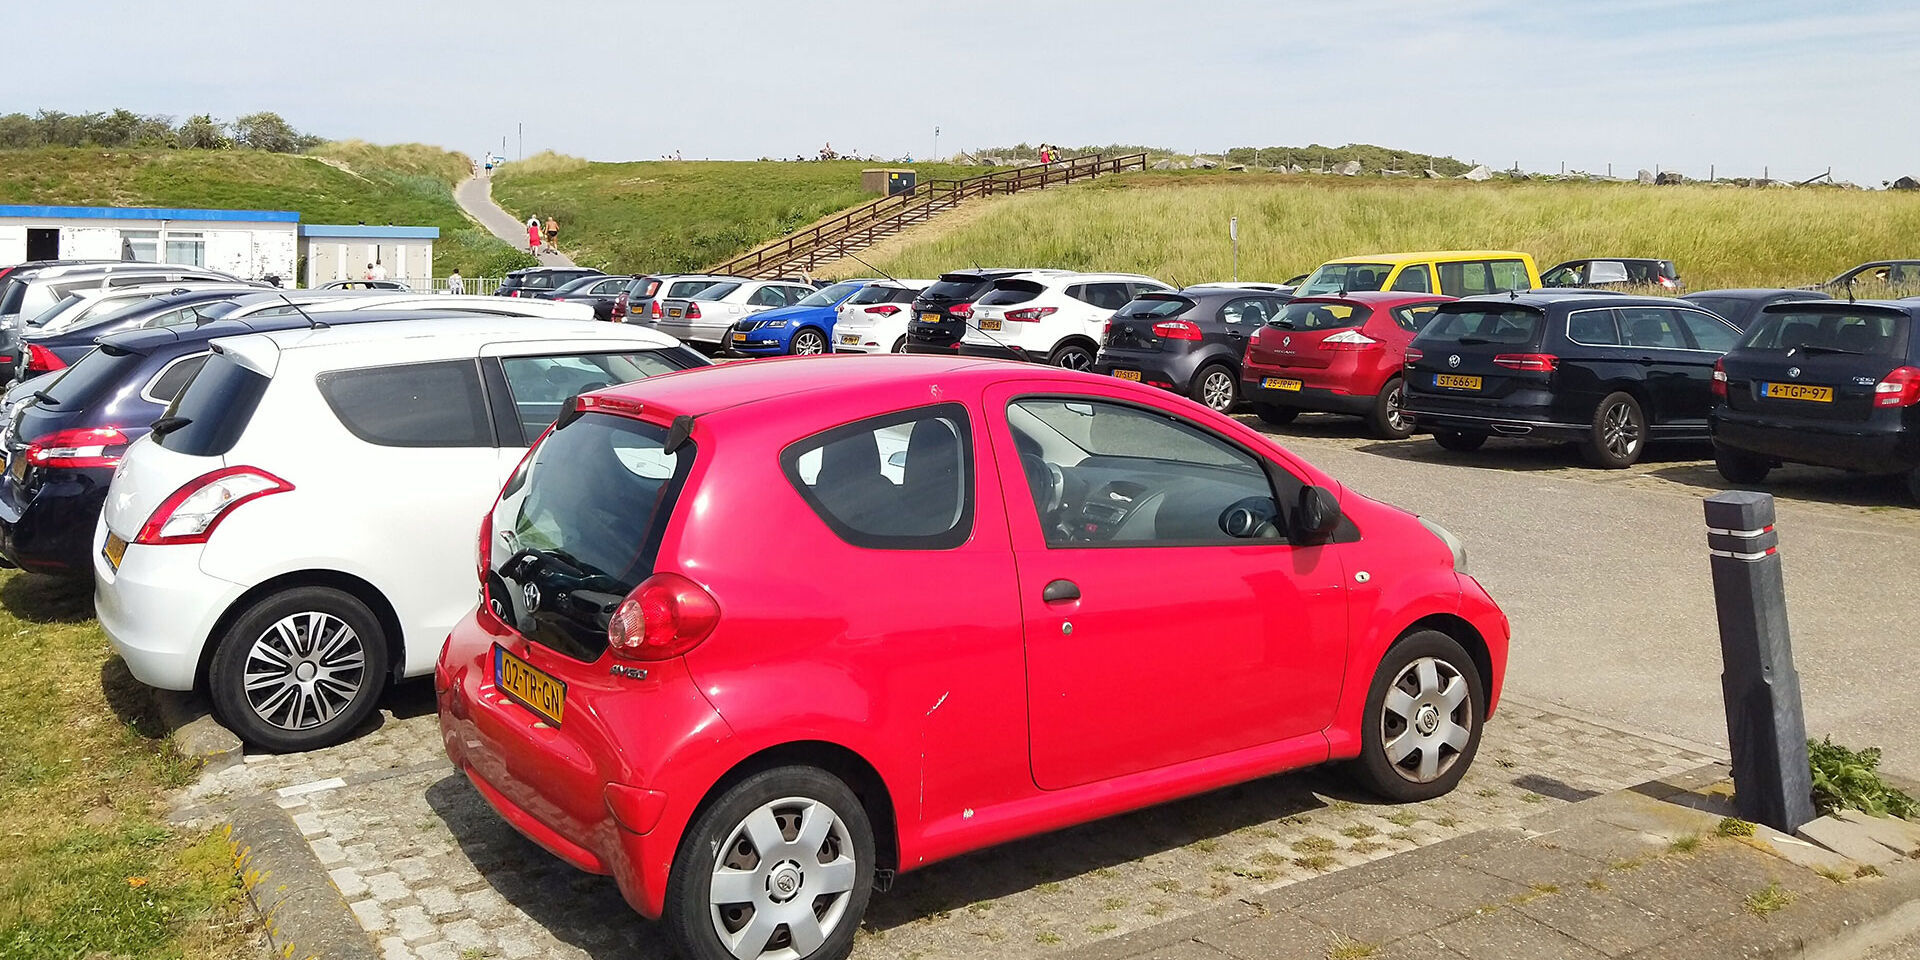 parkeerplaats vol met geparkeerde auto's aan het strand in het westland